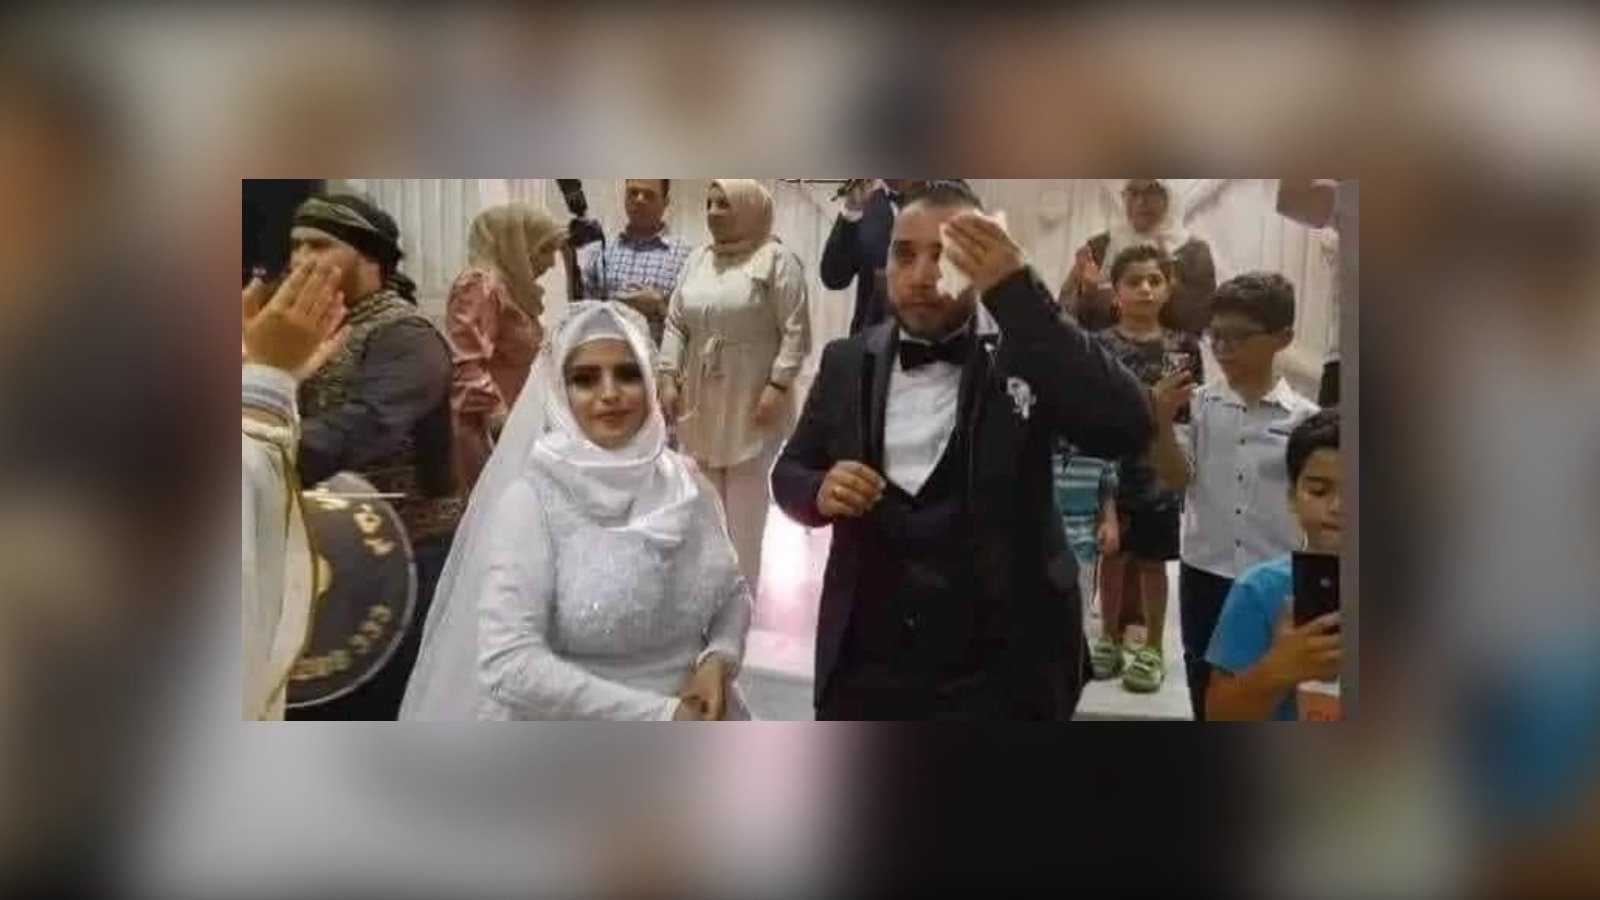 صورة تفاعل مع عروس تونسية تركها عريسها في حفل الزفاف بزعم أنها قبيحة بالصور